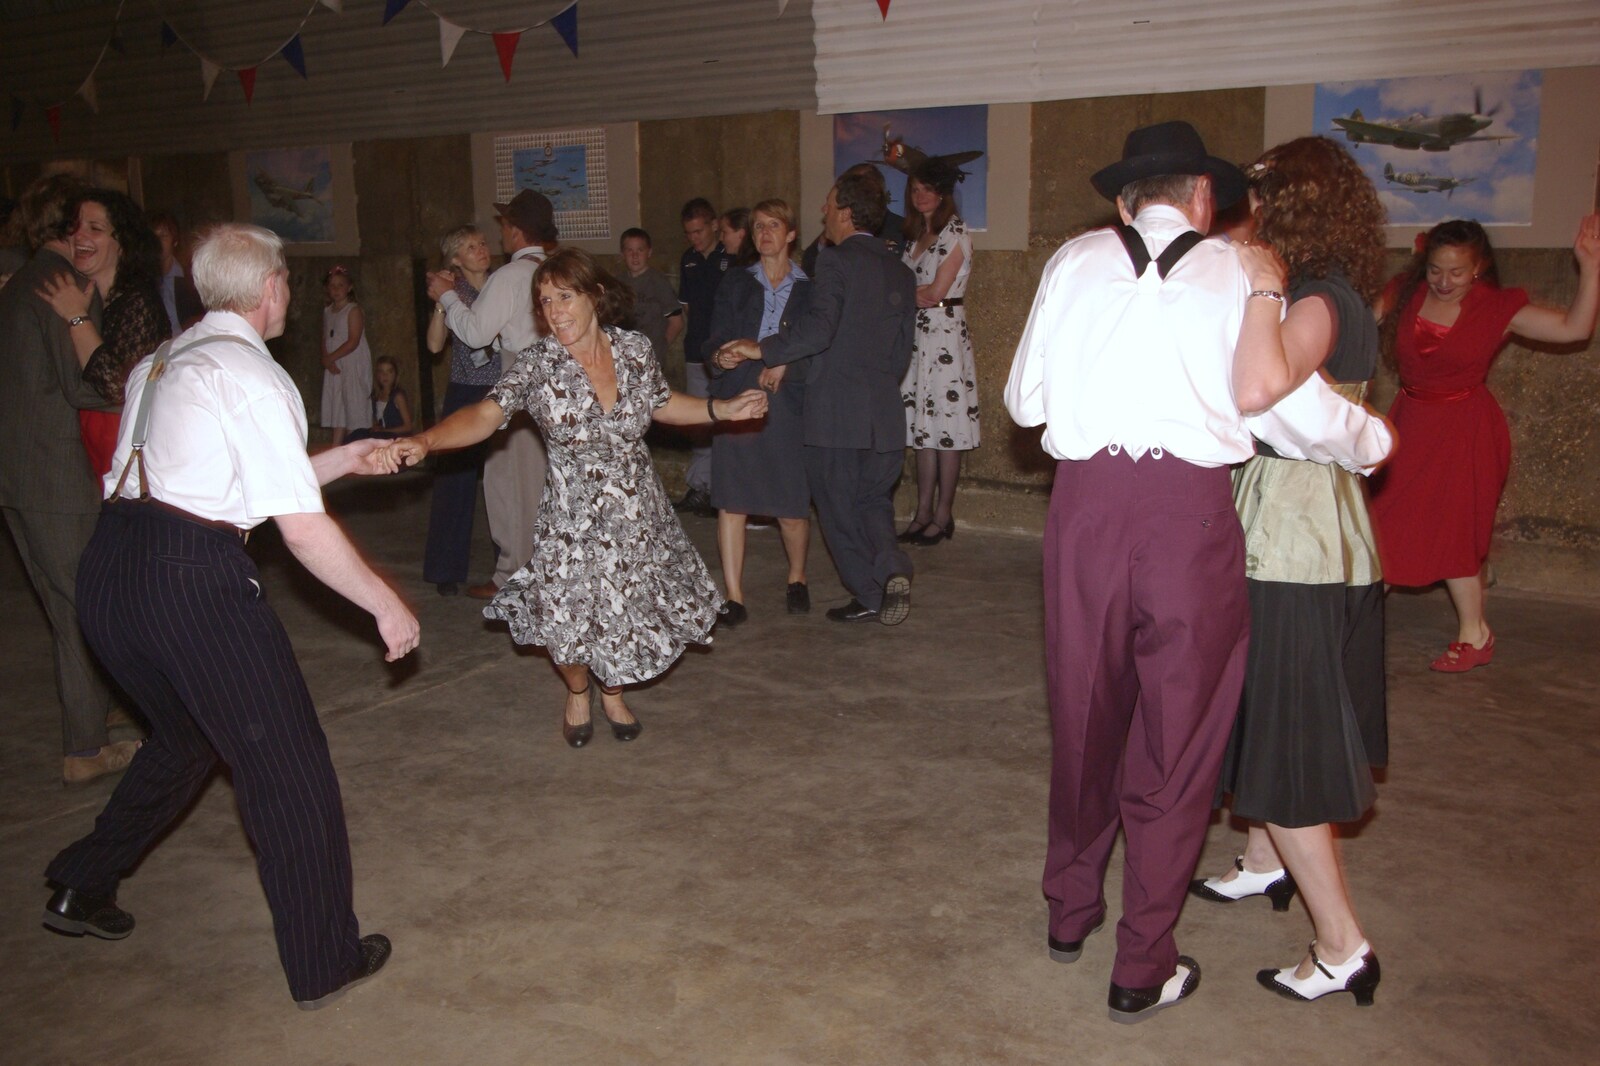 A 1940s Airfield Hangar Dance, Debach, Suffolk - 9th June 2007: Spats all round